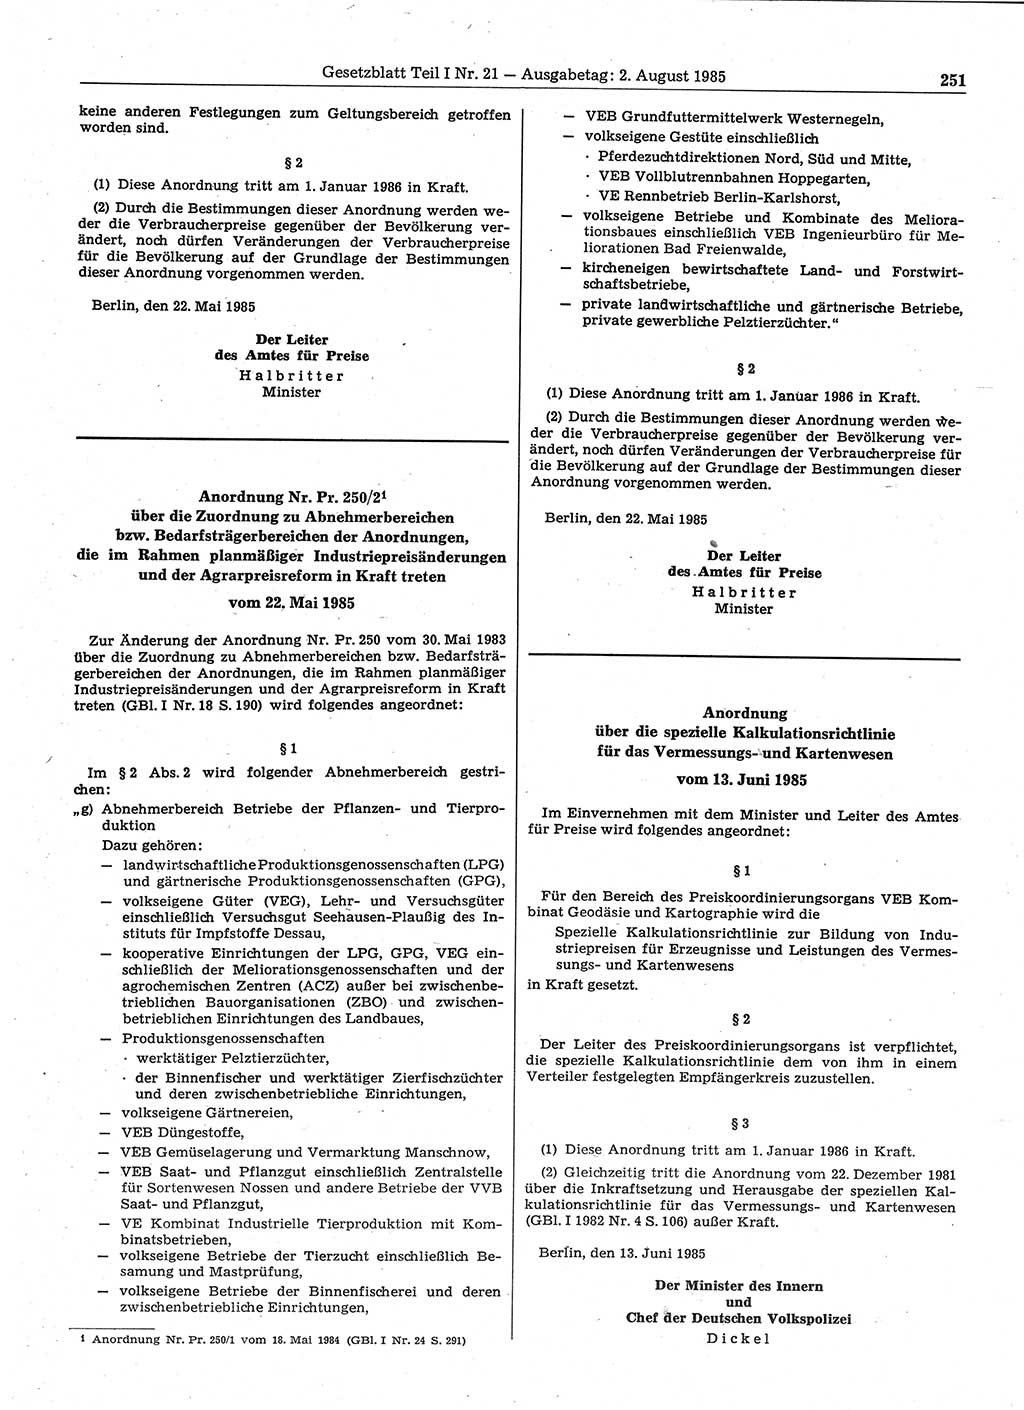 Gesetzblatt (GBl.) der Deutschen Demokratischen Republik (DDR) Teil Ⅰ 1985, Seite 251 (GBl. DDR Ⅰ 1985, S. 251)